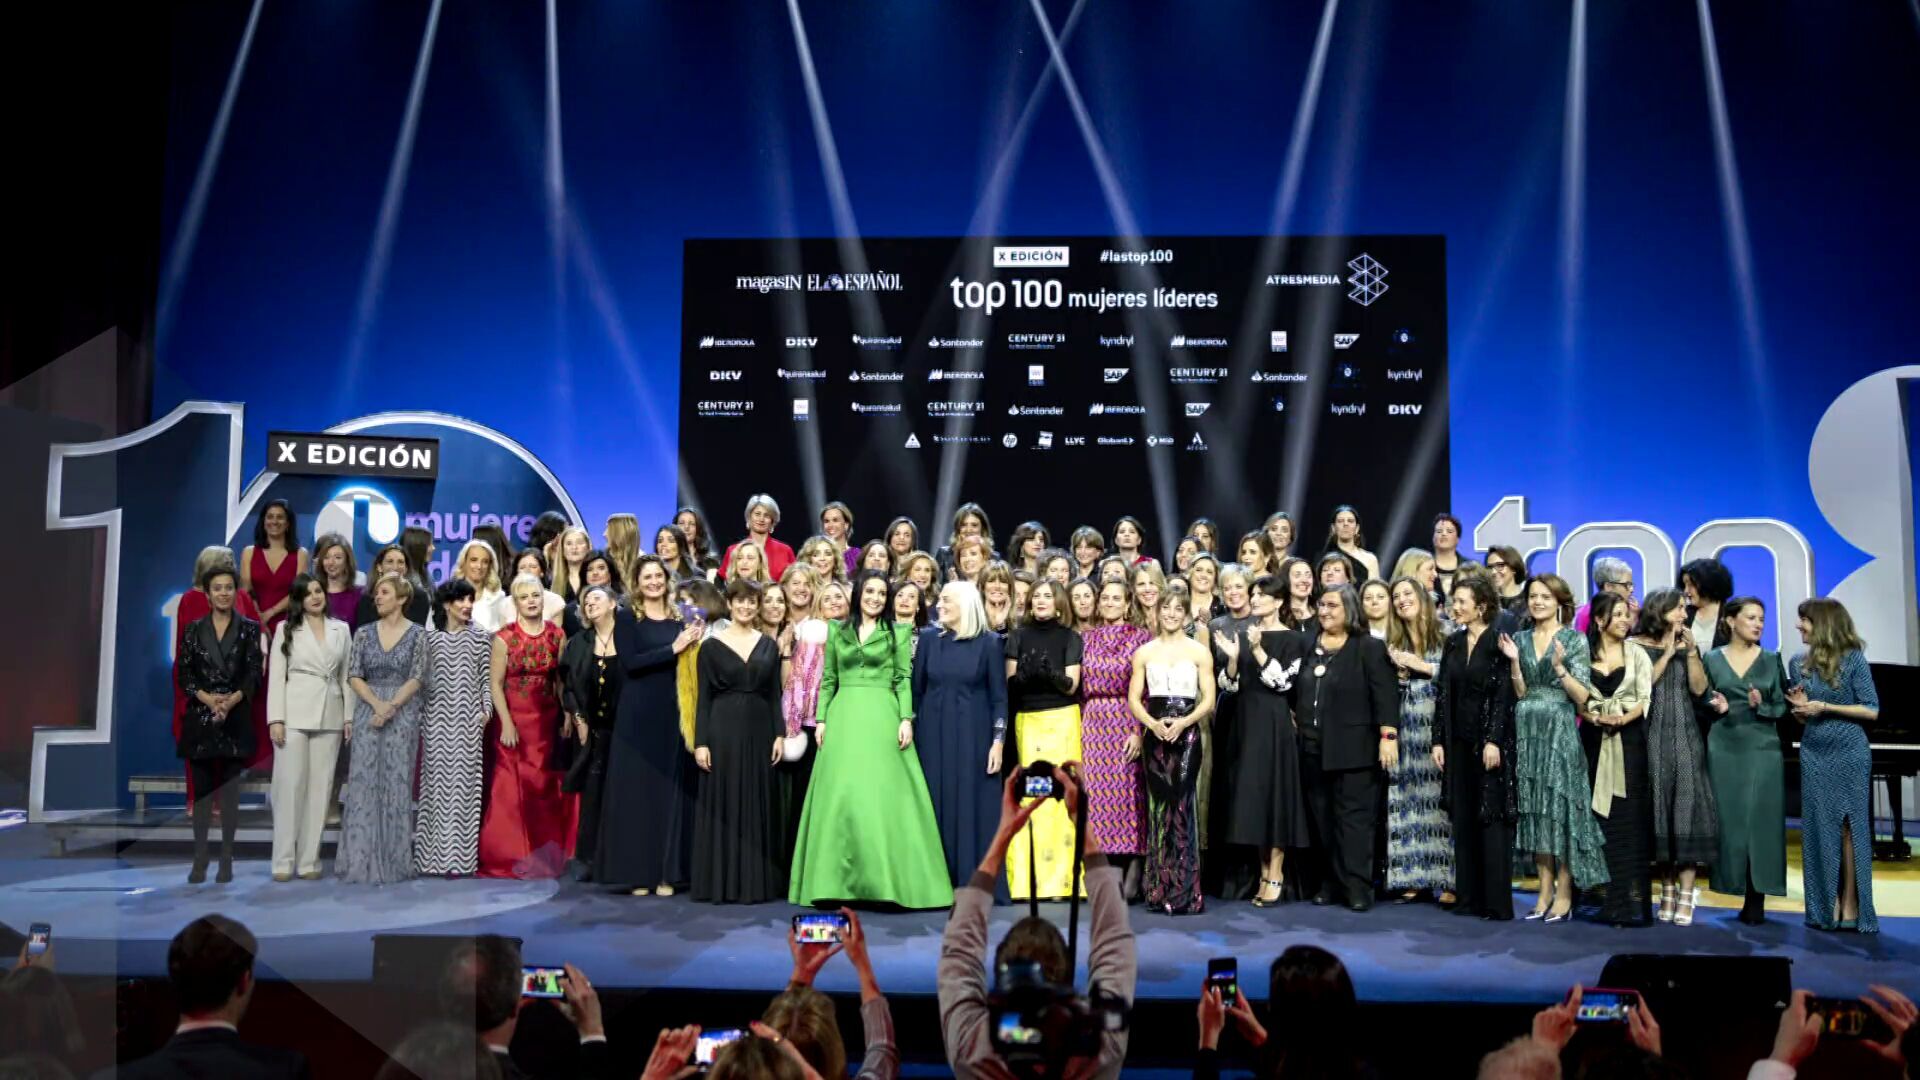 Gala Top 100 mujeres - X edición